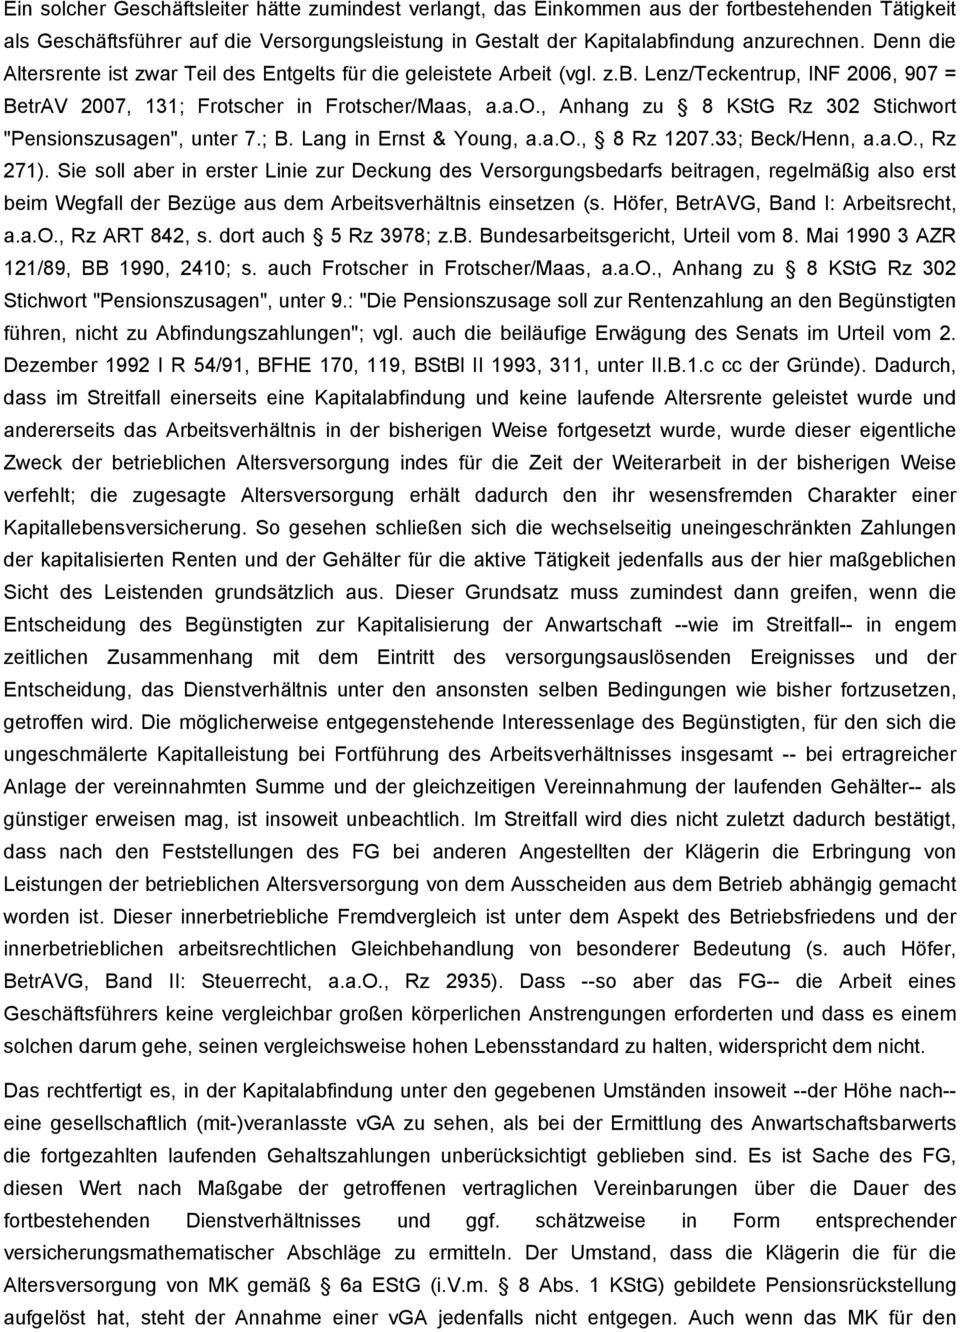 scher in Frotscher/Maas, a.a.o., Anhang zu 8 KStG Rz 302 Stichwort "Pensionszusagen", unter 7.; B. Lang in Ernst & Young, a.a.o., 8 Rz 1207.33; Beck/Henn, a.a.o., Rz 271).